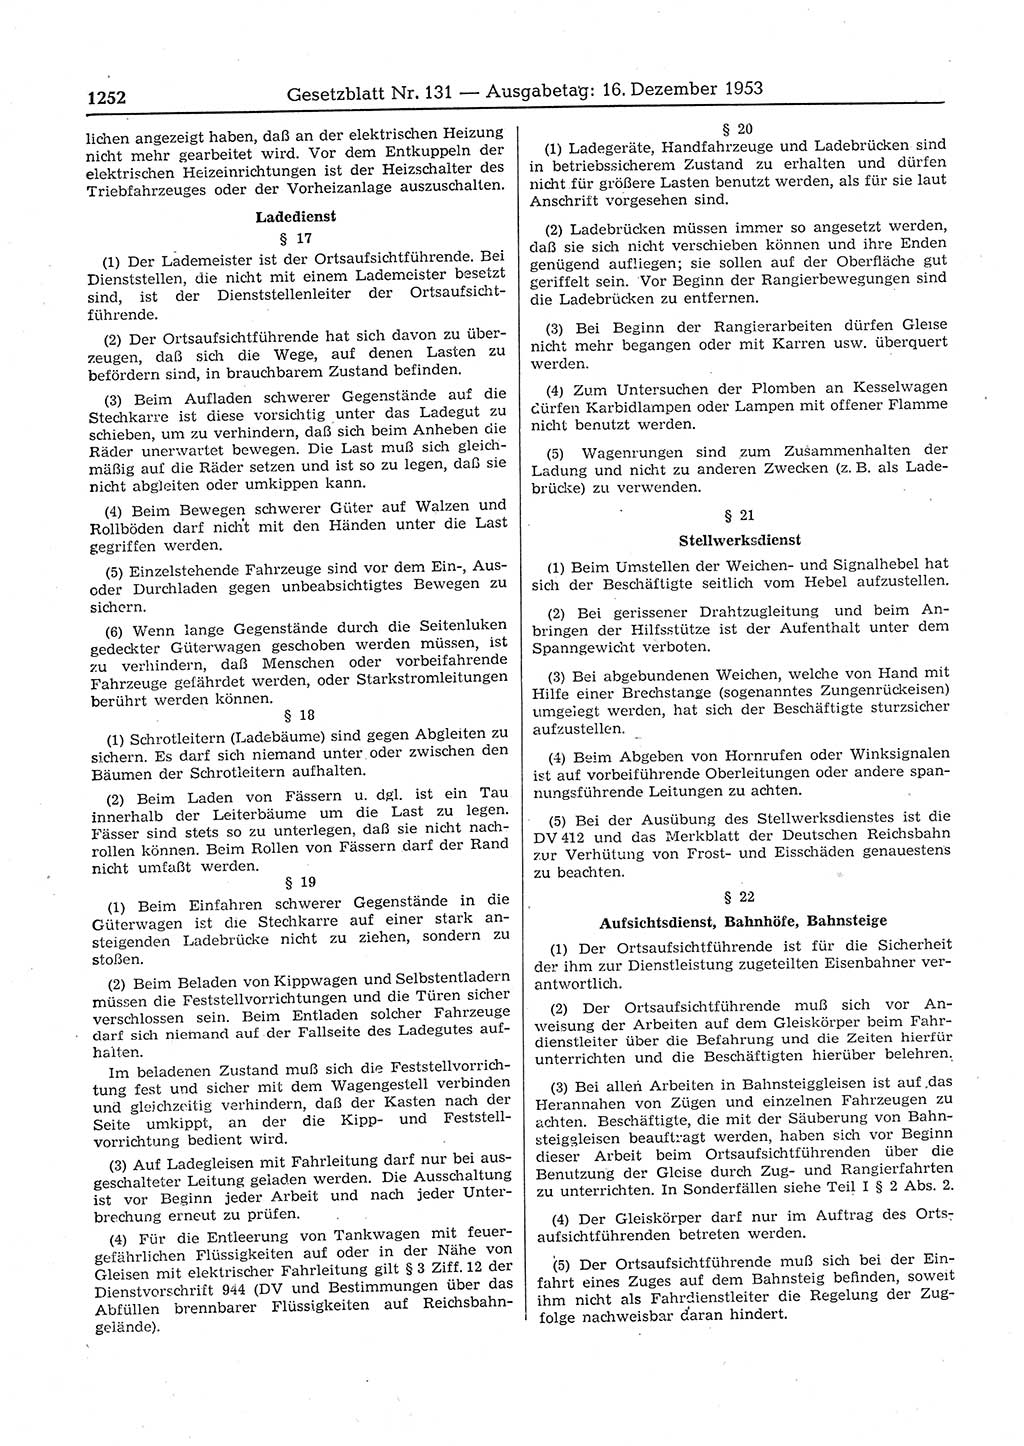 Gesetzblatt (GBl.) der Deutschen Demokratischen Republik (DDR) 1953, Seite 1252 (GBl. DDR 1953, S. 1252)